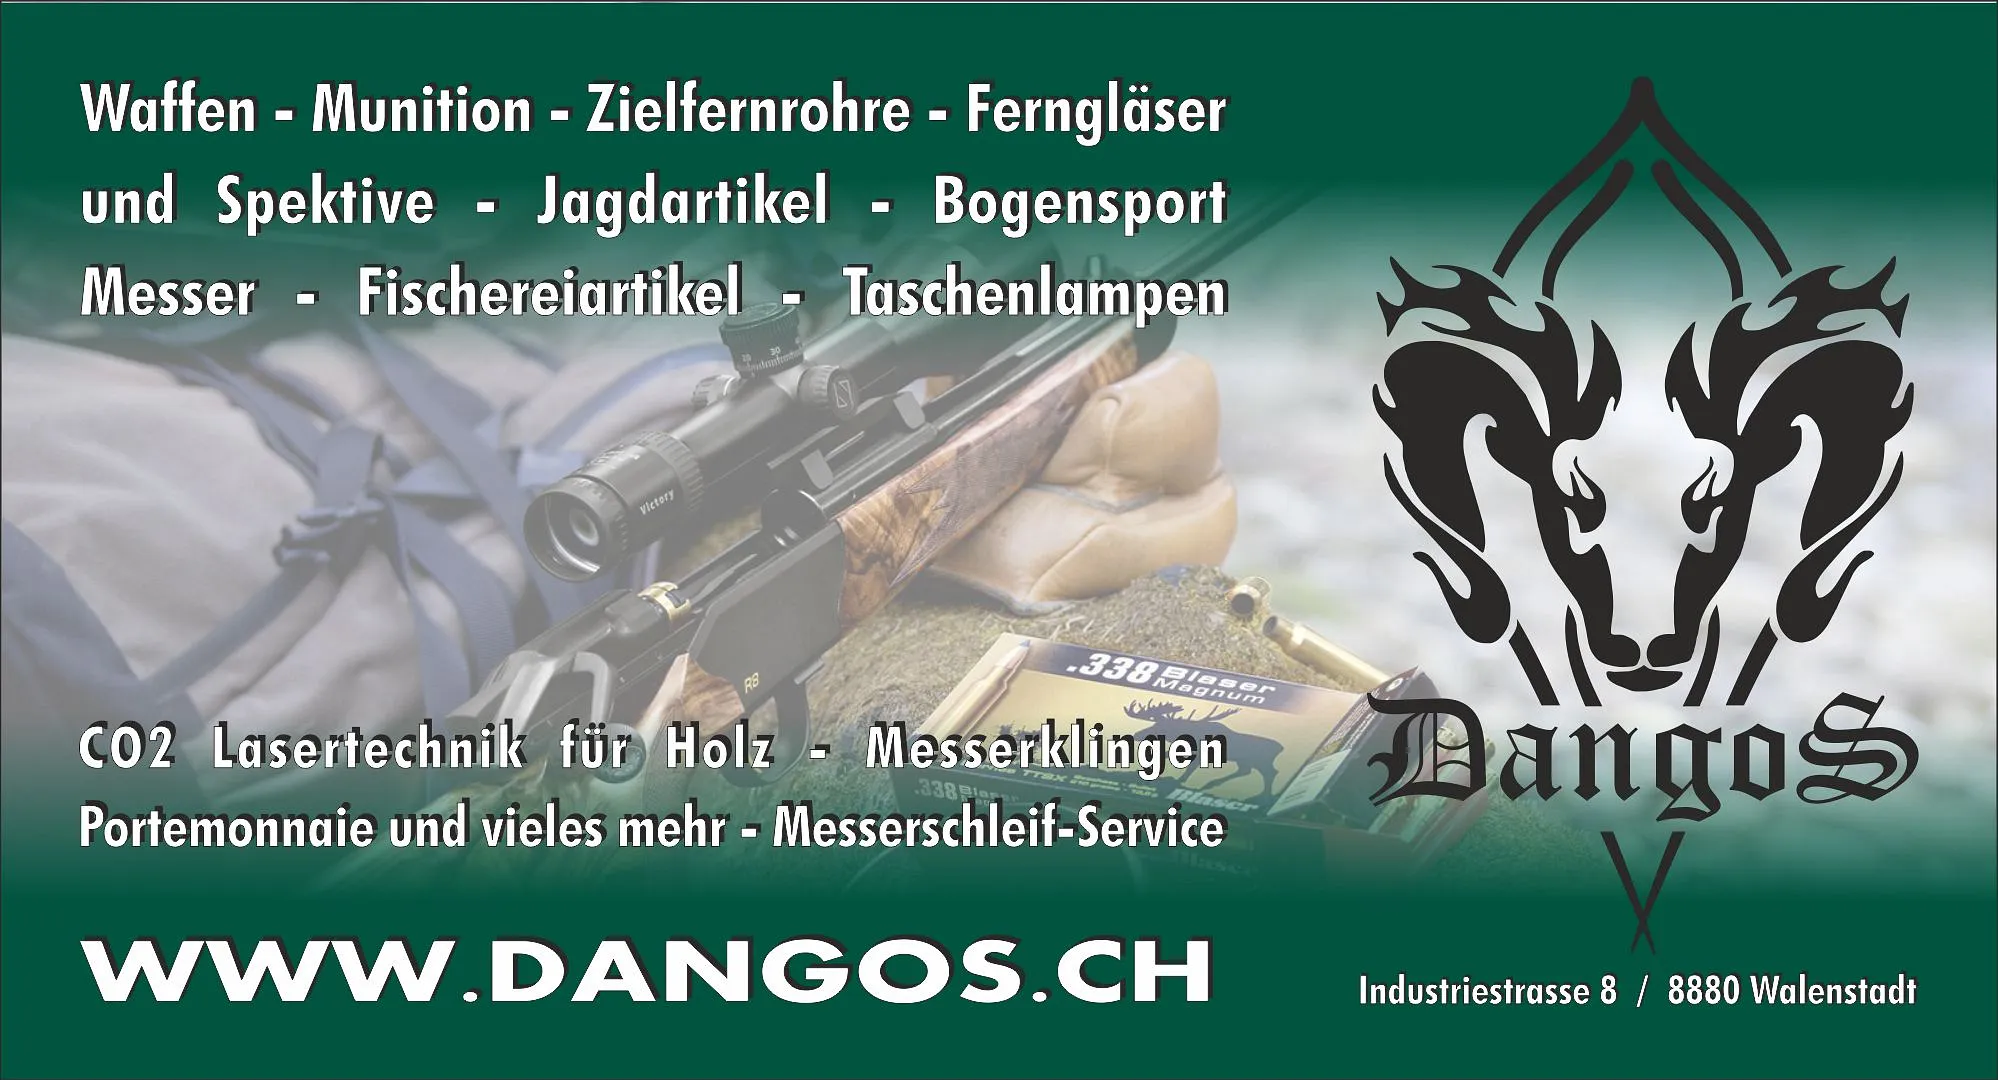 DangoS GmbH